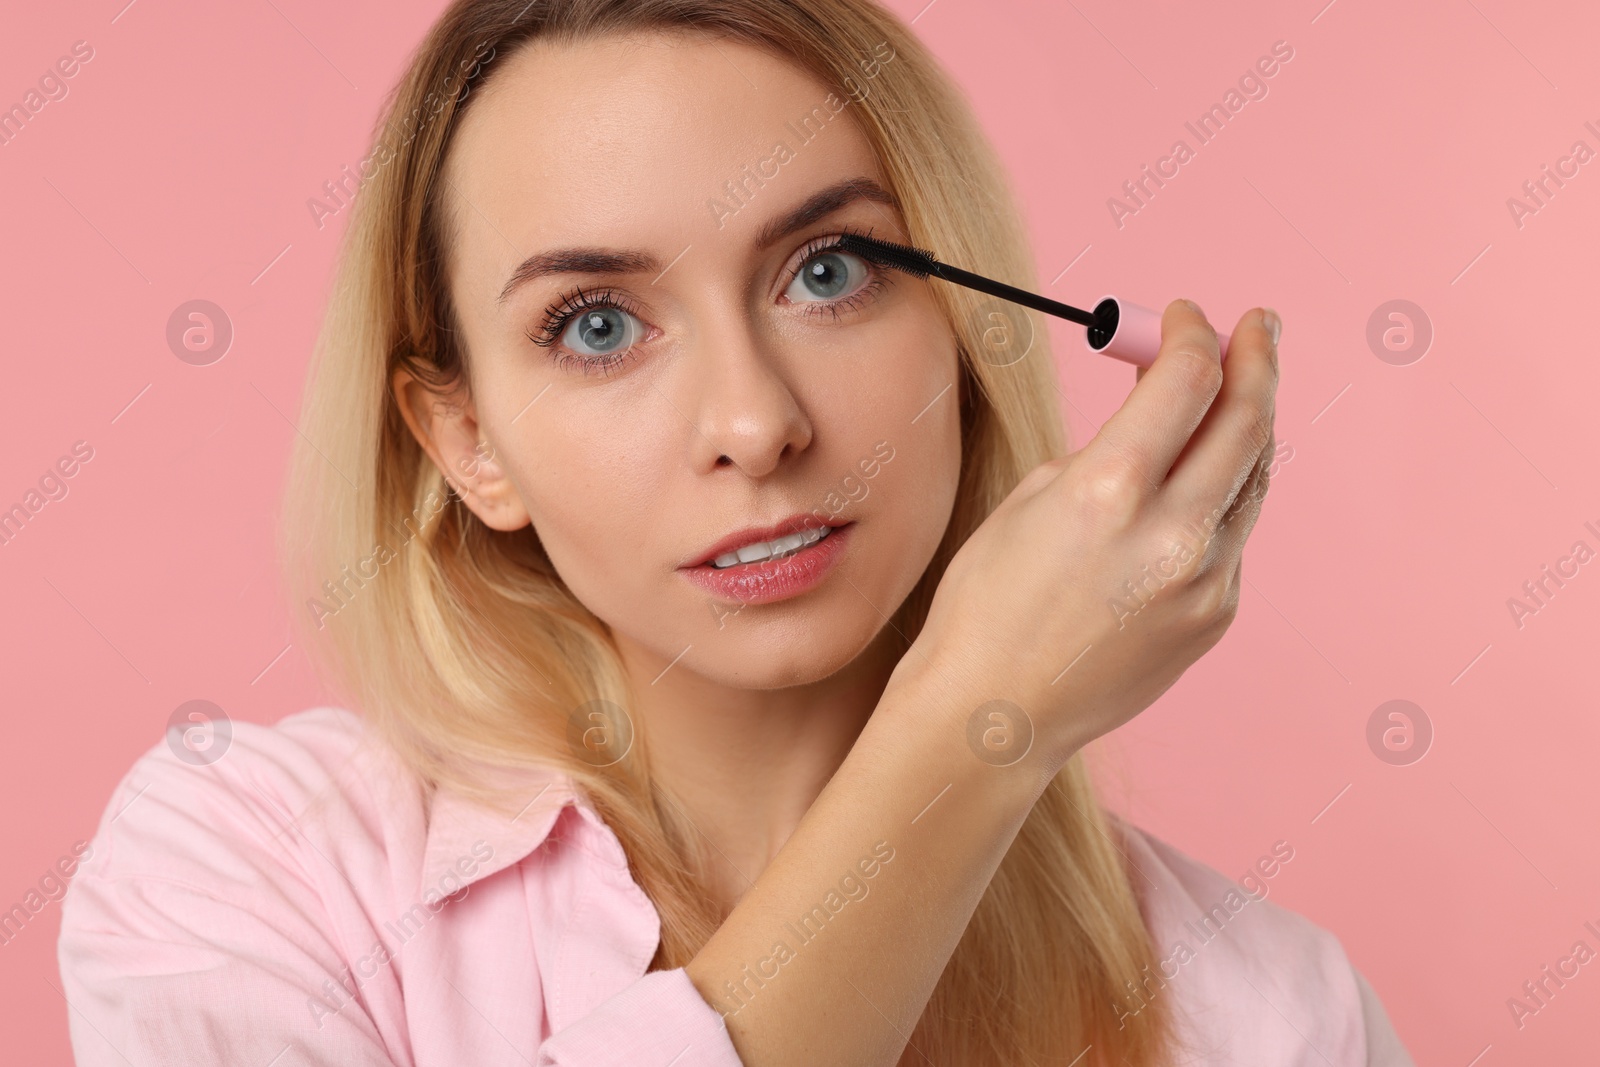 Photo of Beautiful woman applying mascara on pink background, closeup